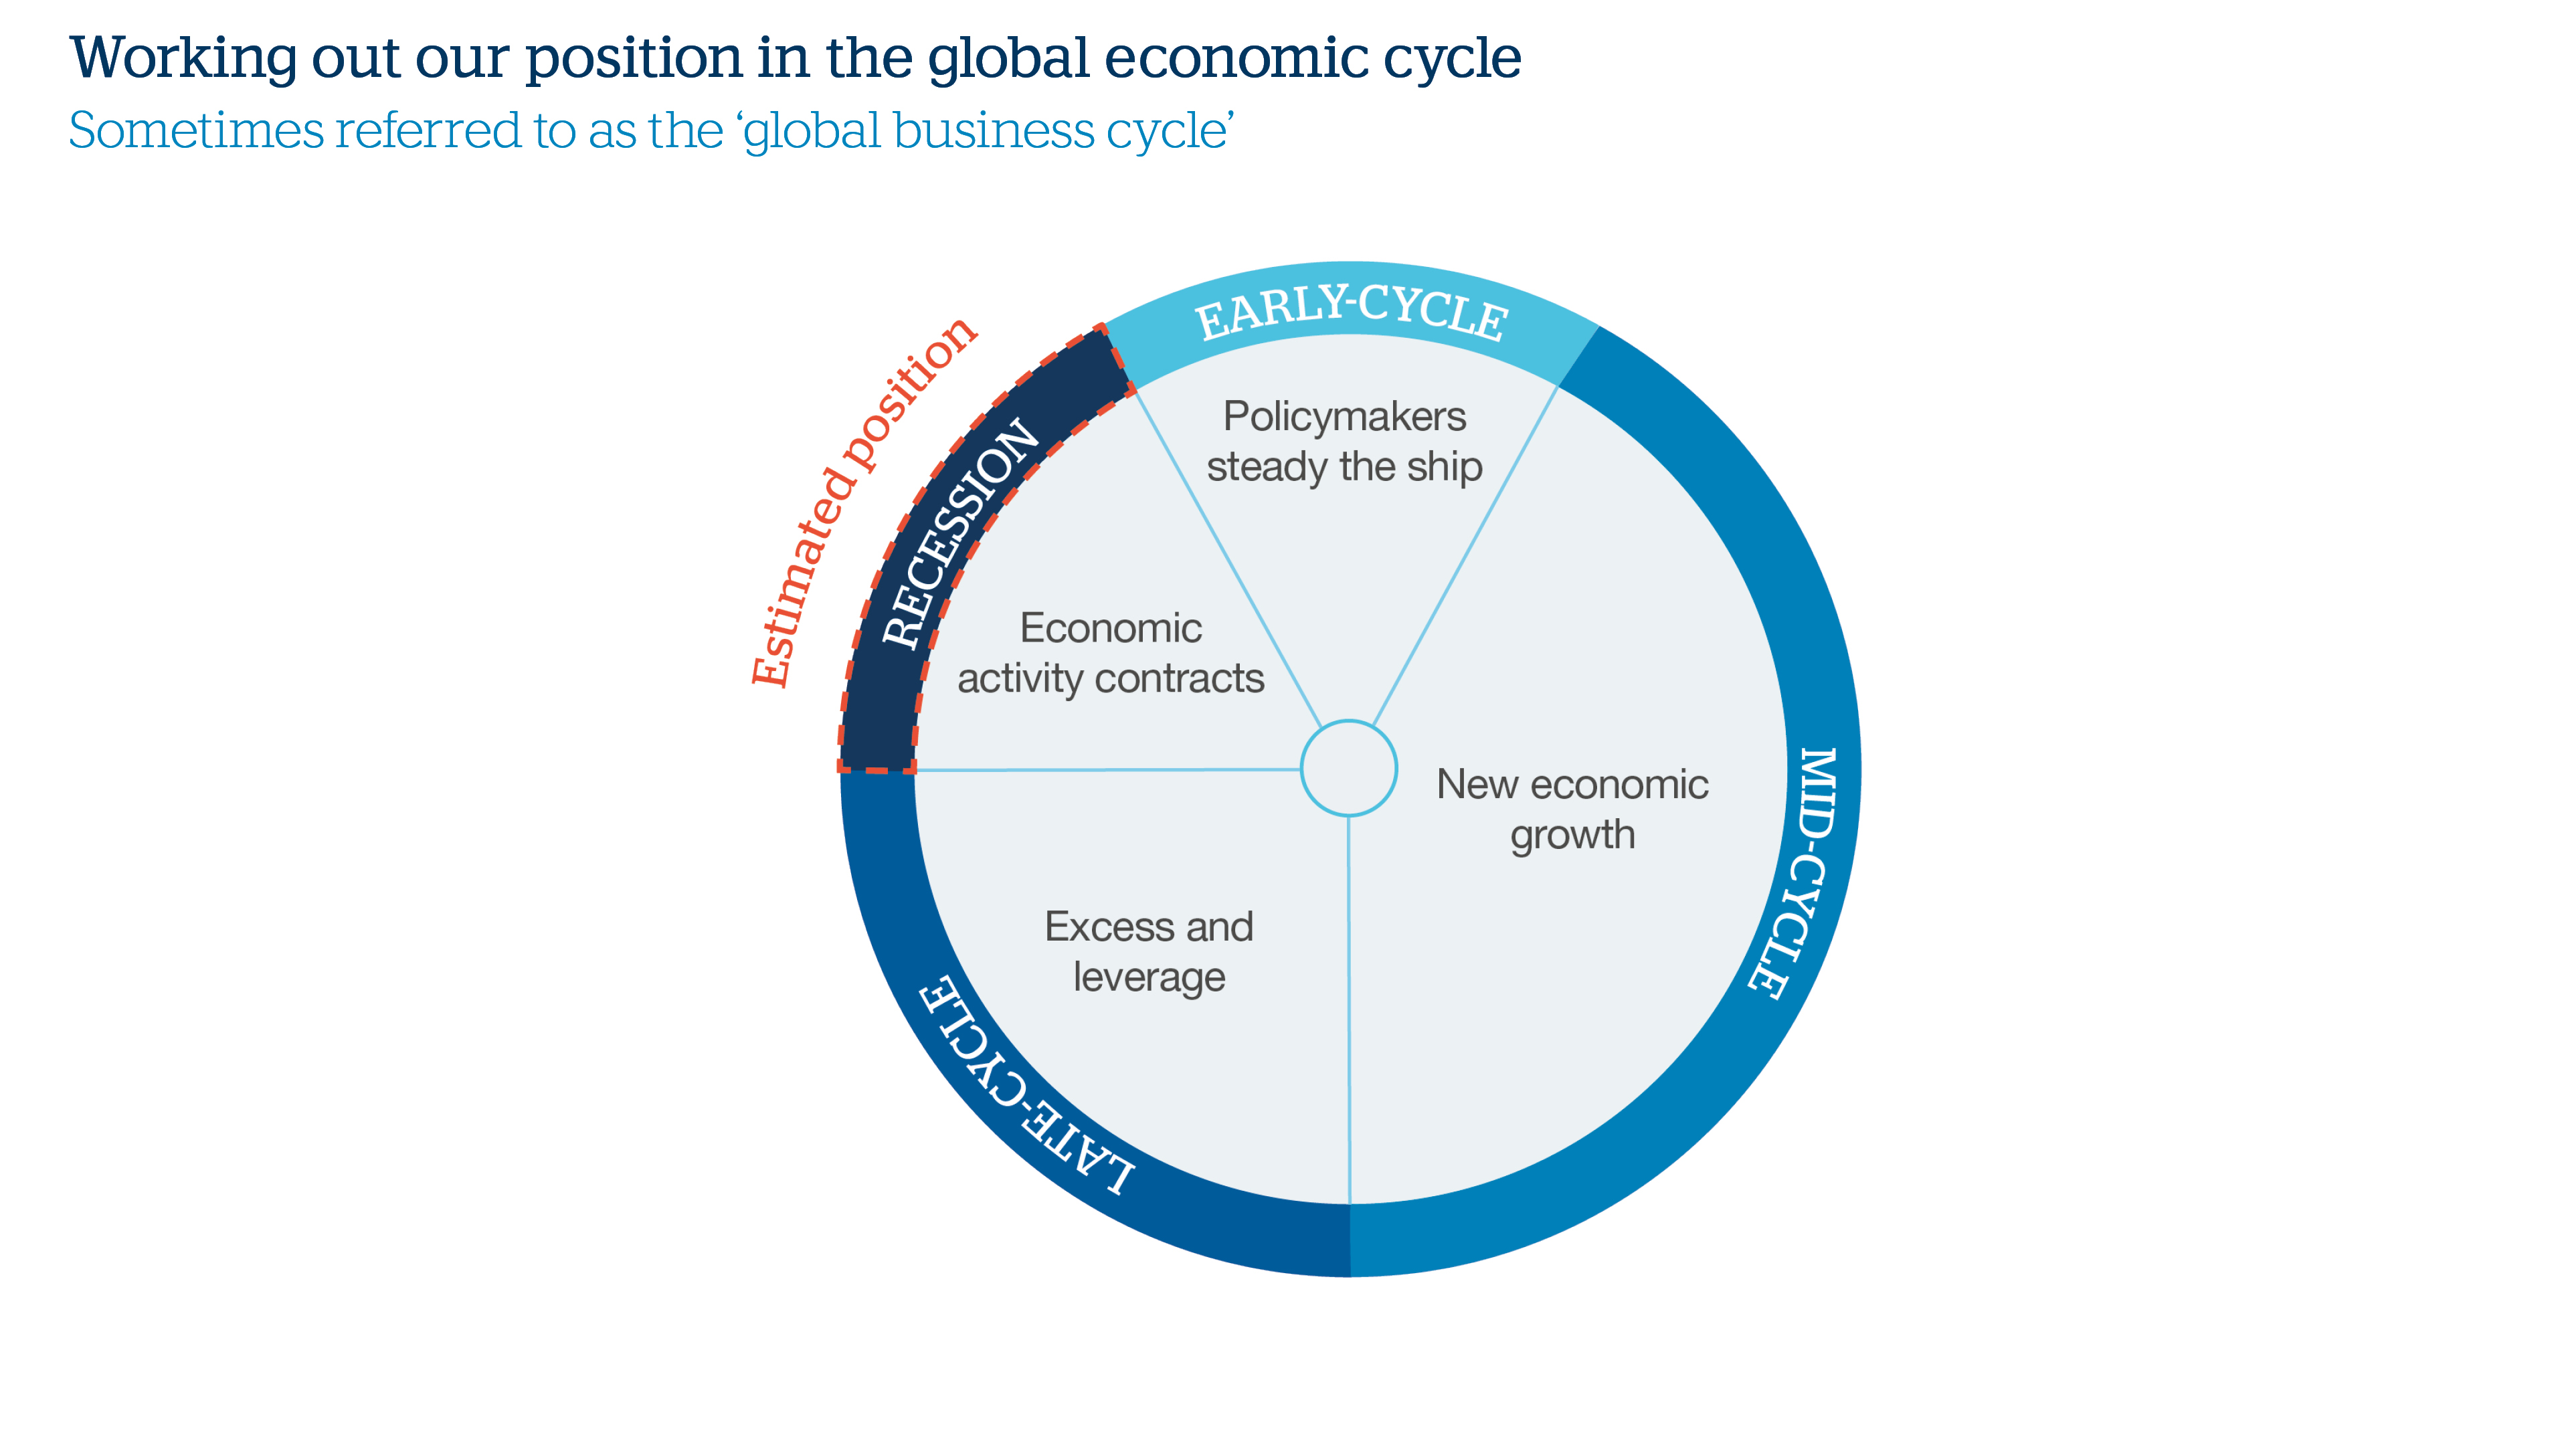 Economic Cycle